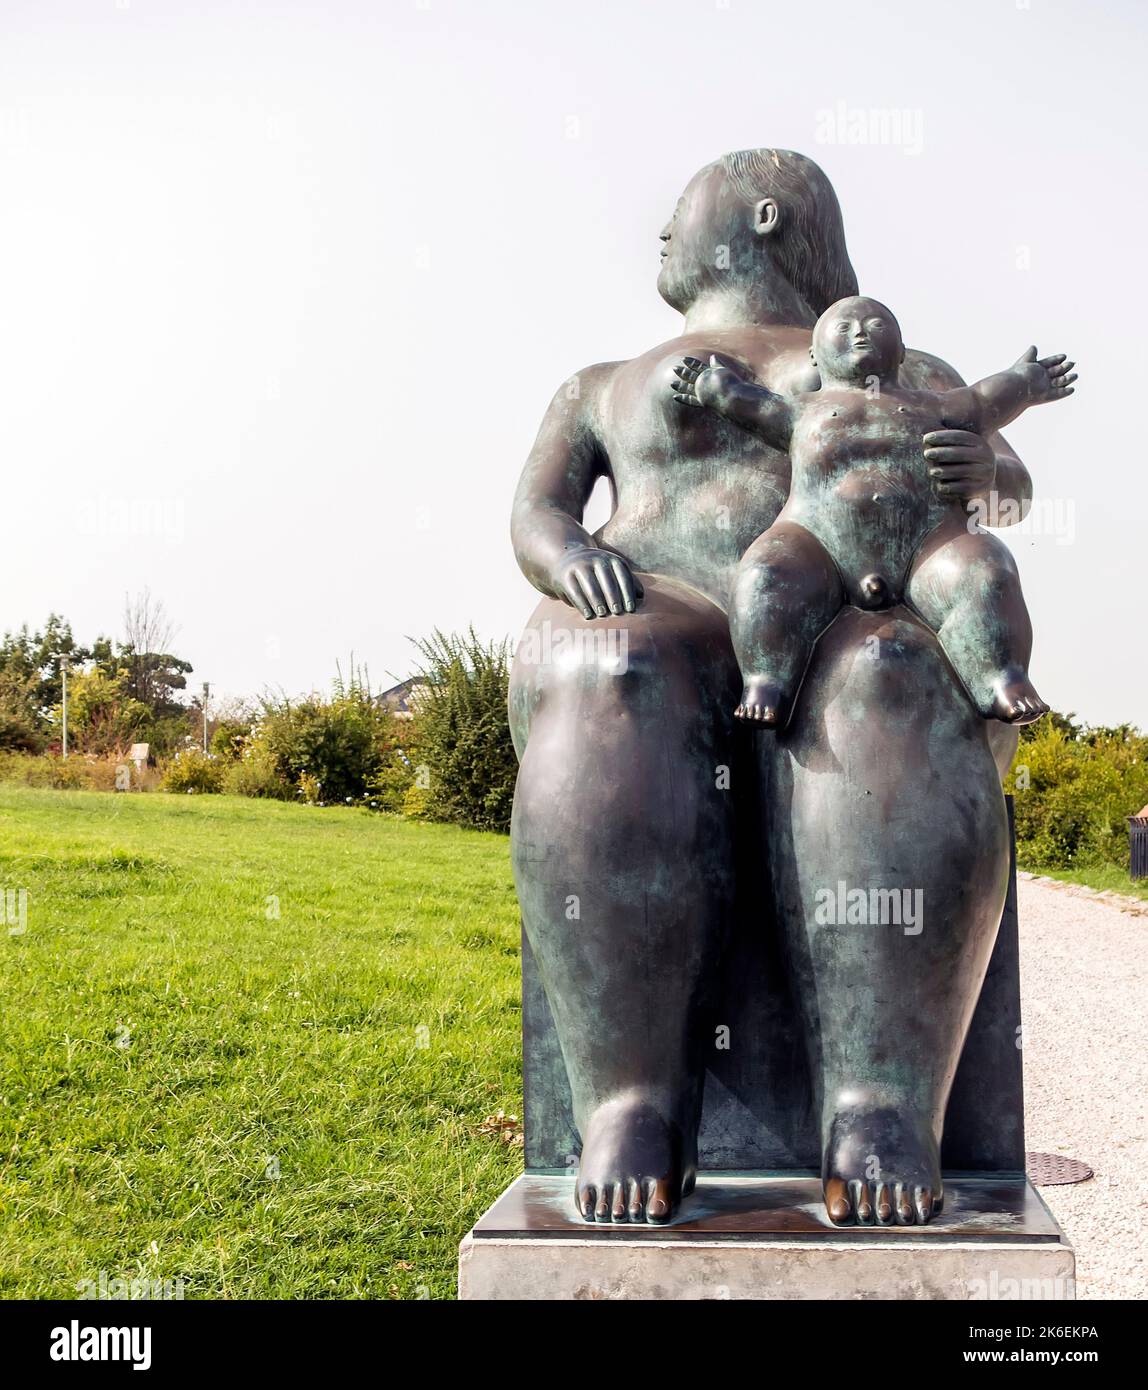 Statua di Maternidade (maternità) dell'artista colombiano Fernando Botero nel Parque Eduardo VII, Lisbona, Portogallo Foto Stock